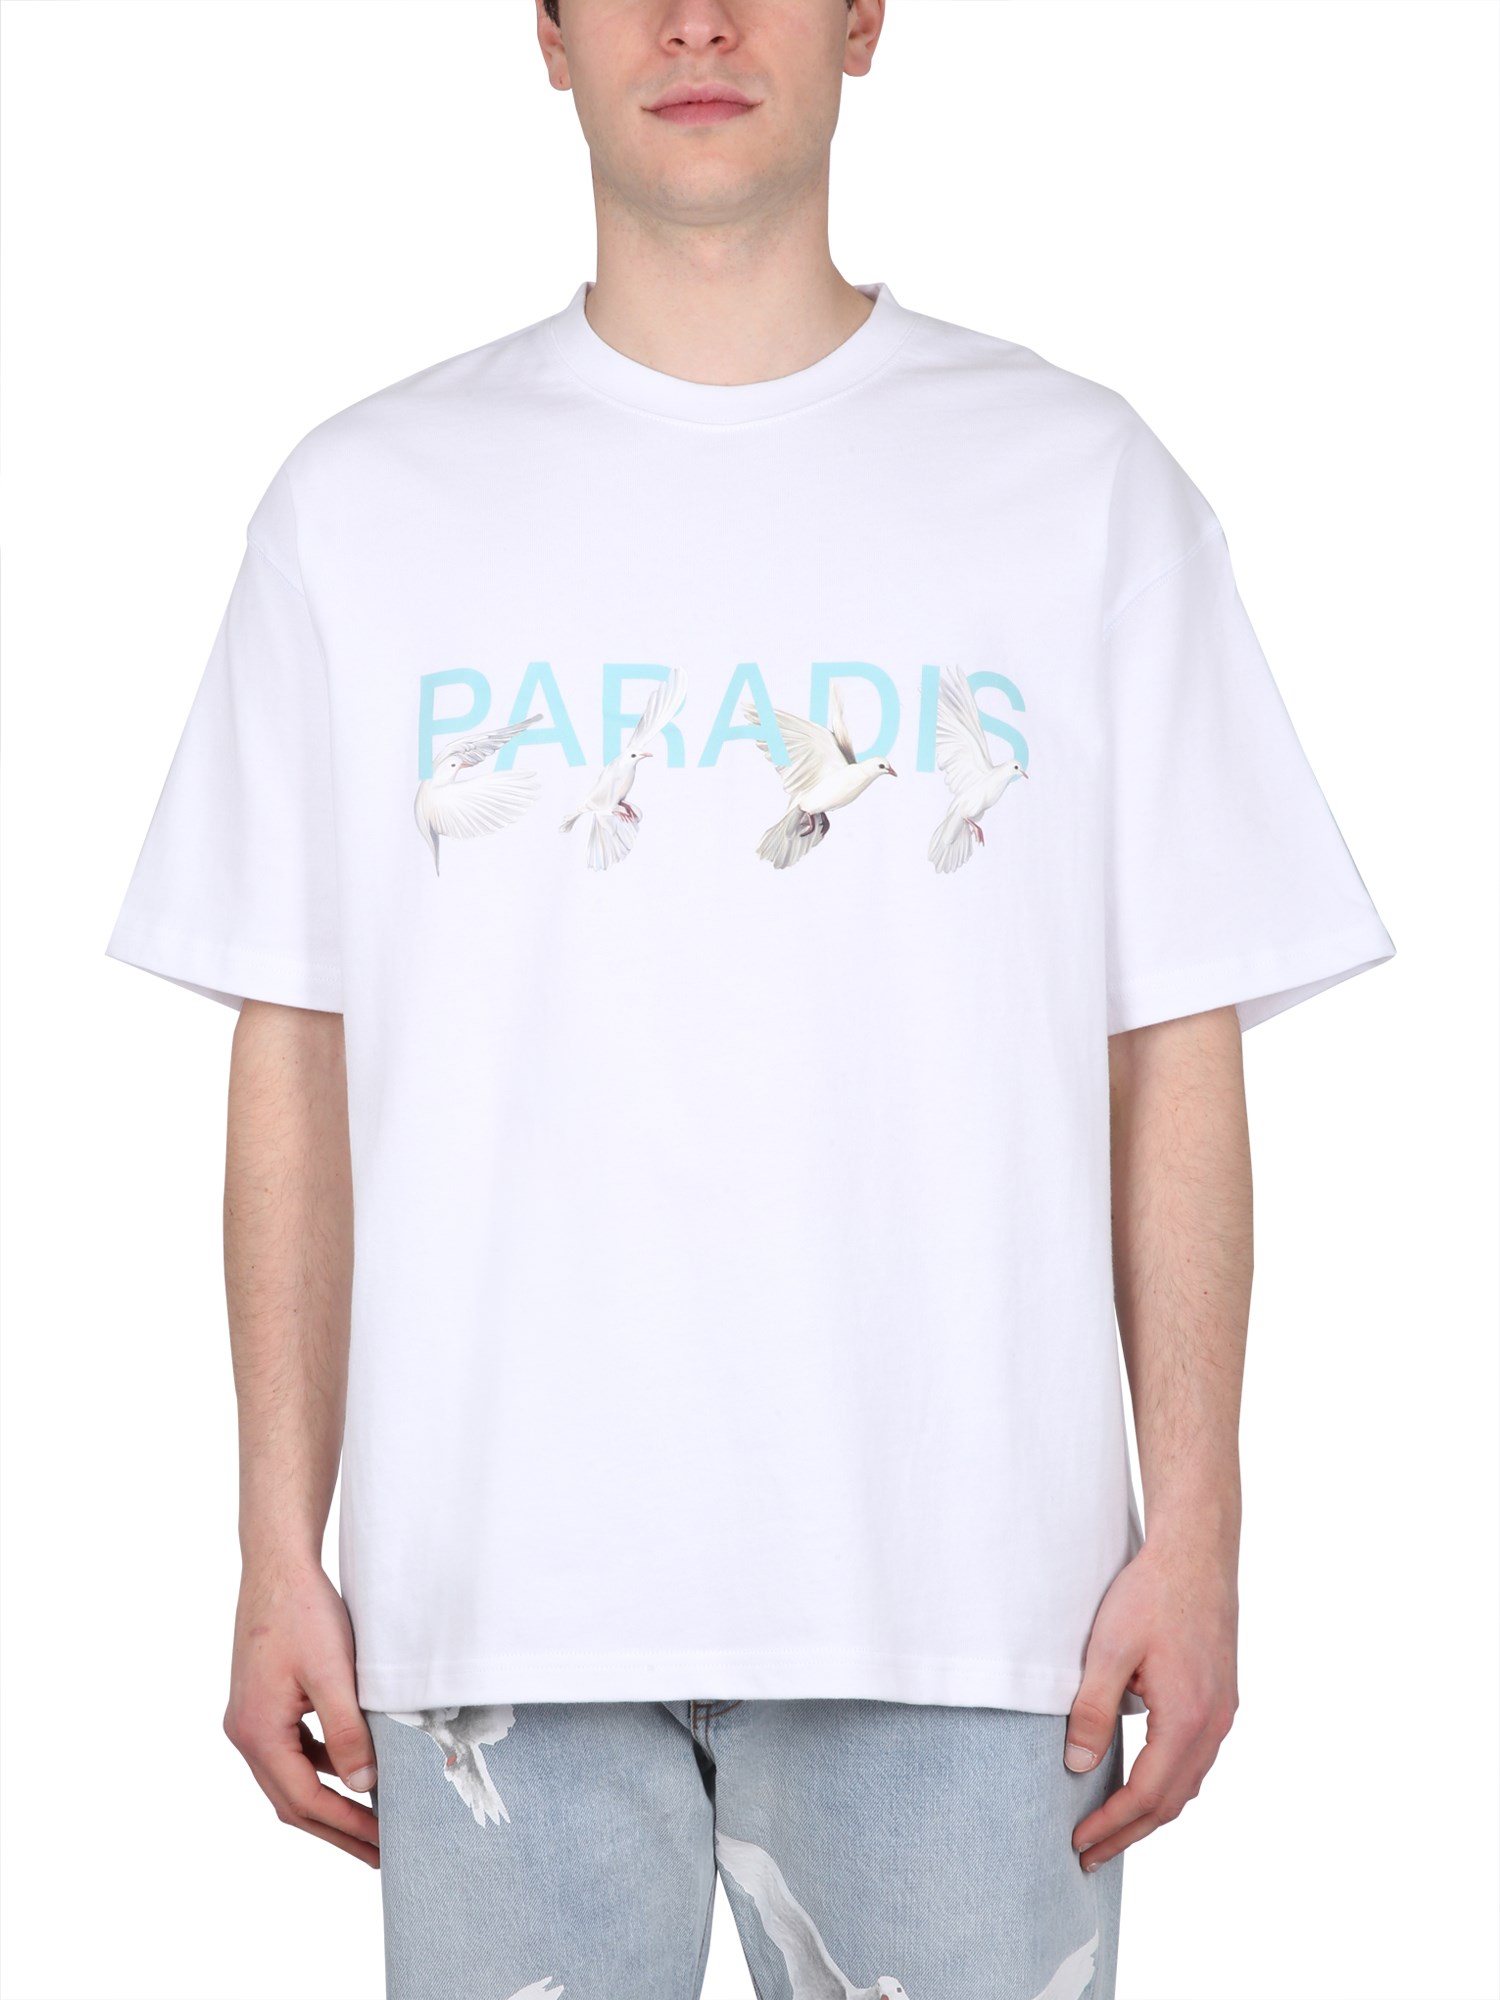 3.paradis paradis t-shirt